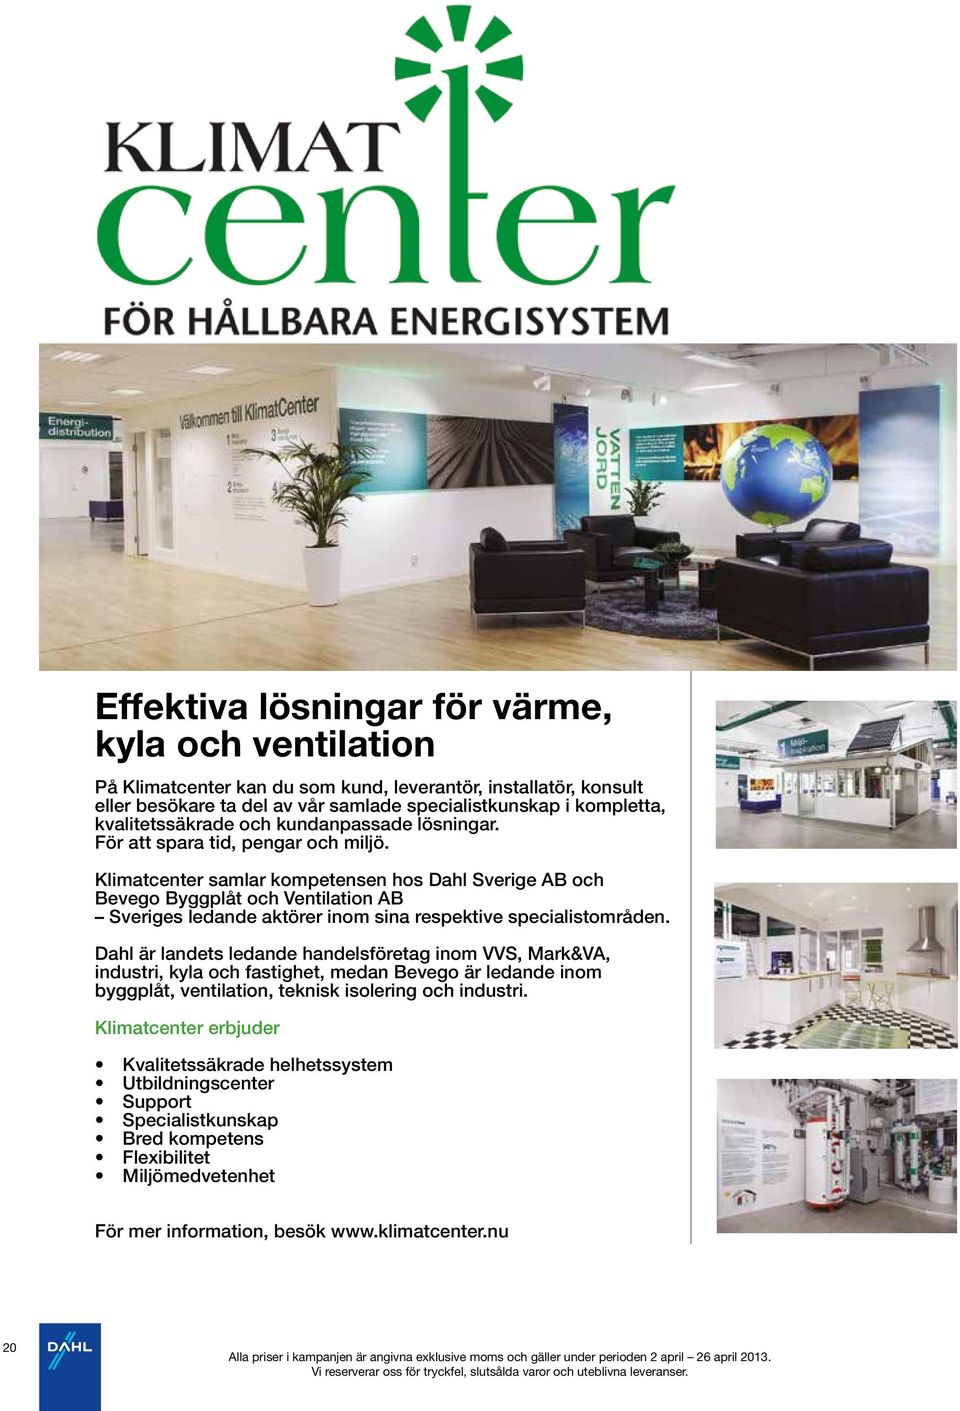 Klimatcenter samlar kompetensen hos Dahl Sverige AB och Bevego Byggplåt och Ventilation AB Sveriges ledande aktörer inom sina respektive specialistområden.